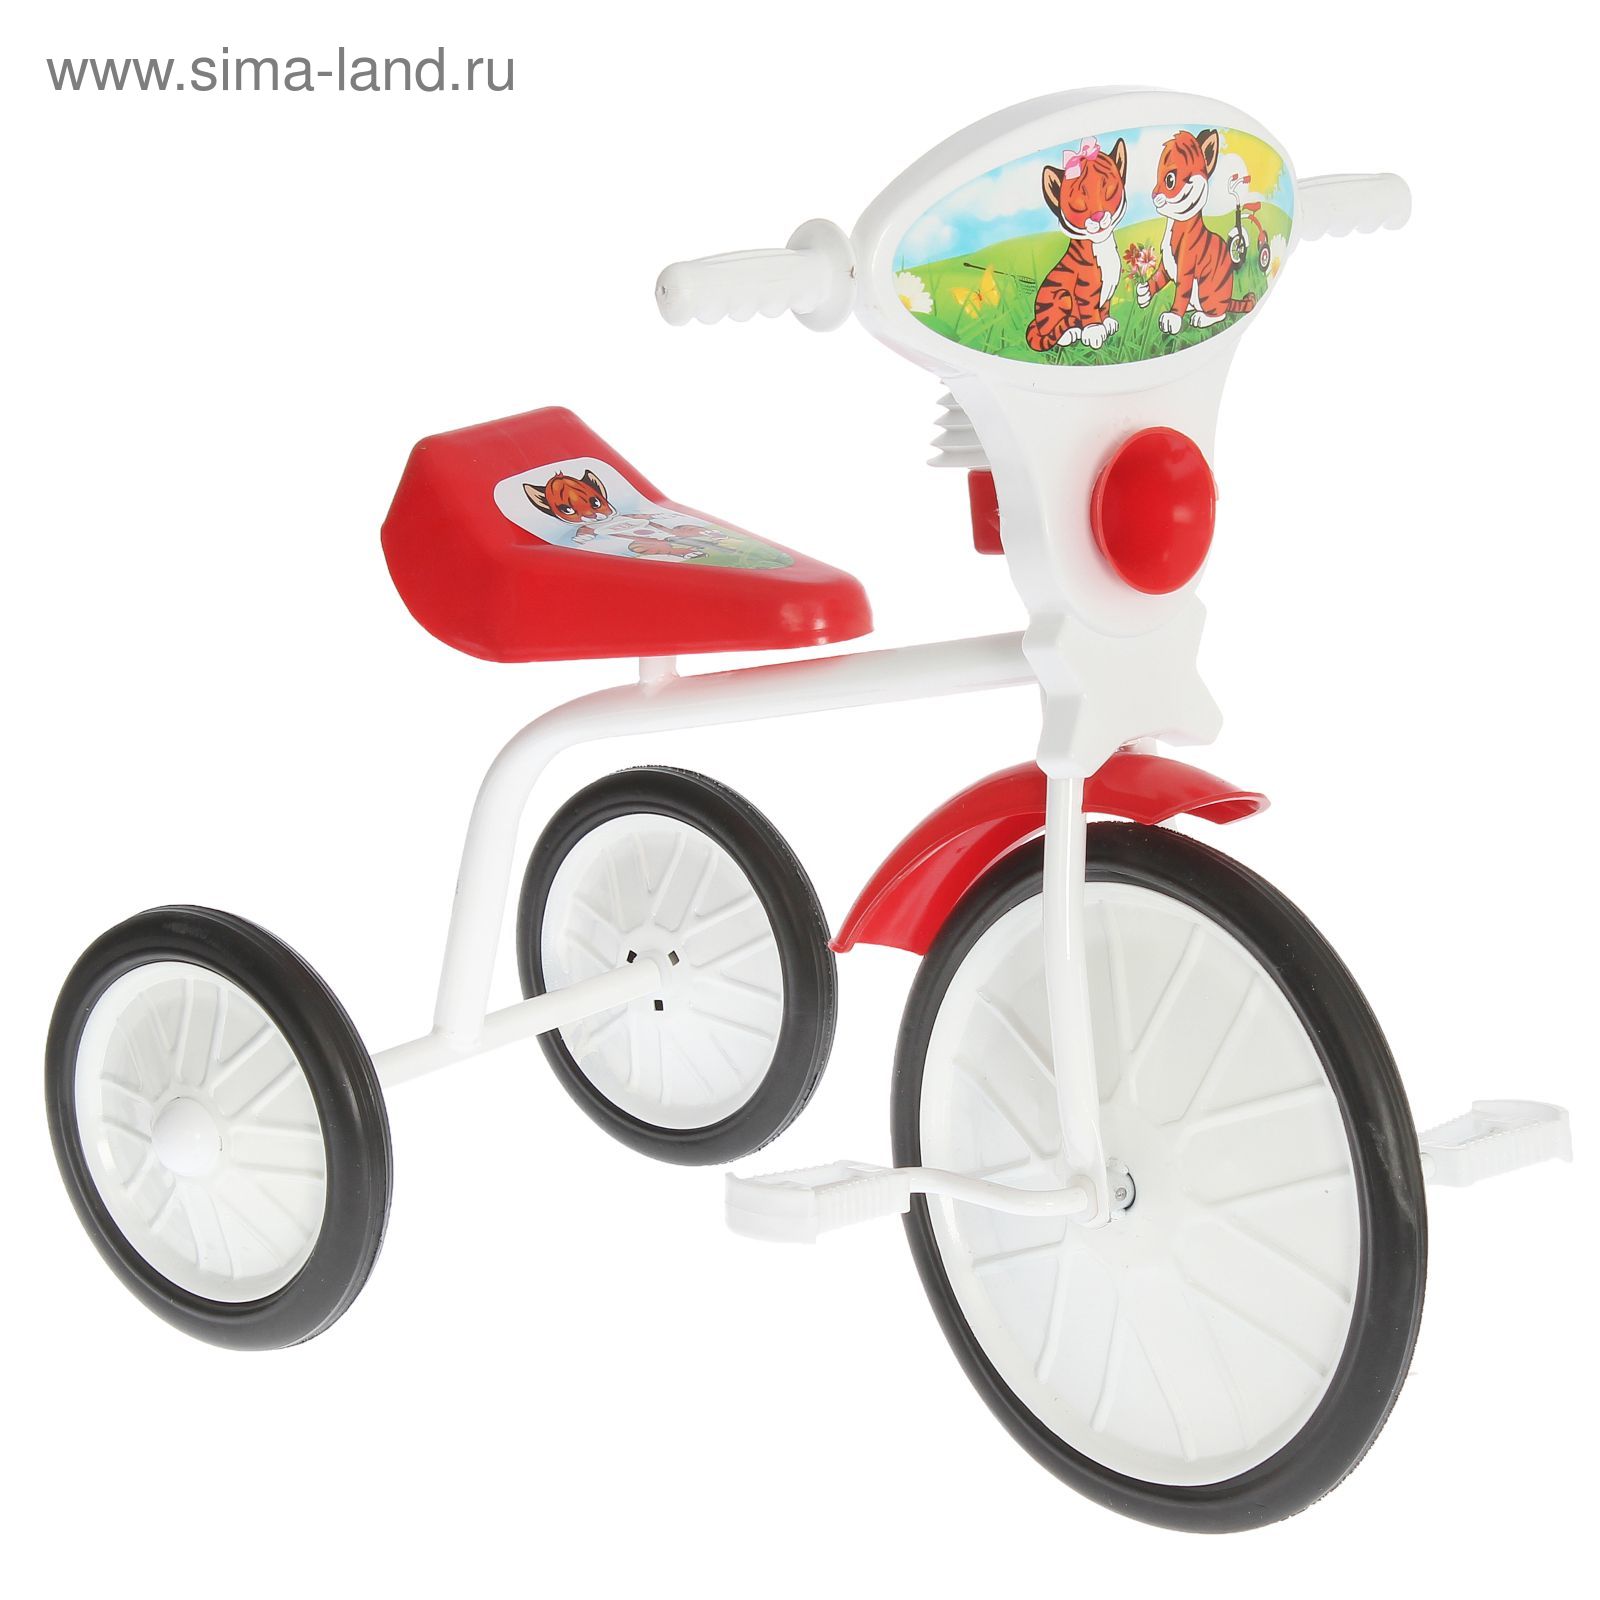 Велосипед трехколесный  "Малыш"  01, цвет красный, фасовка: 3шт.